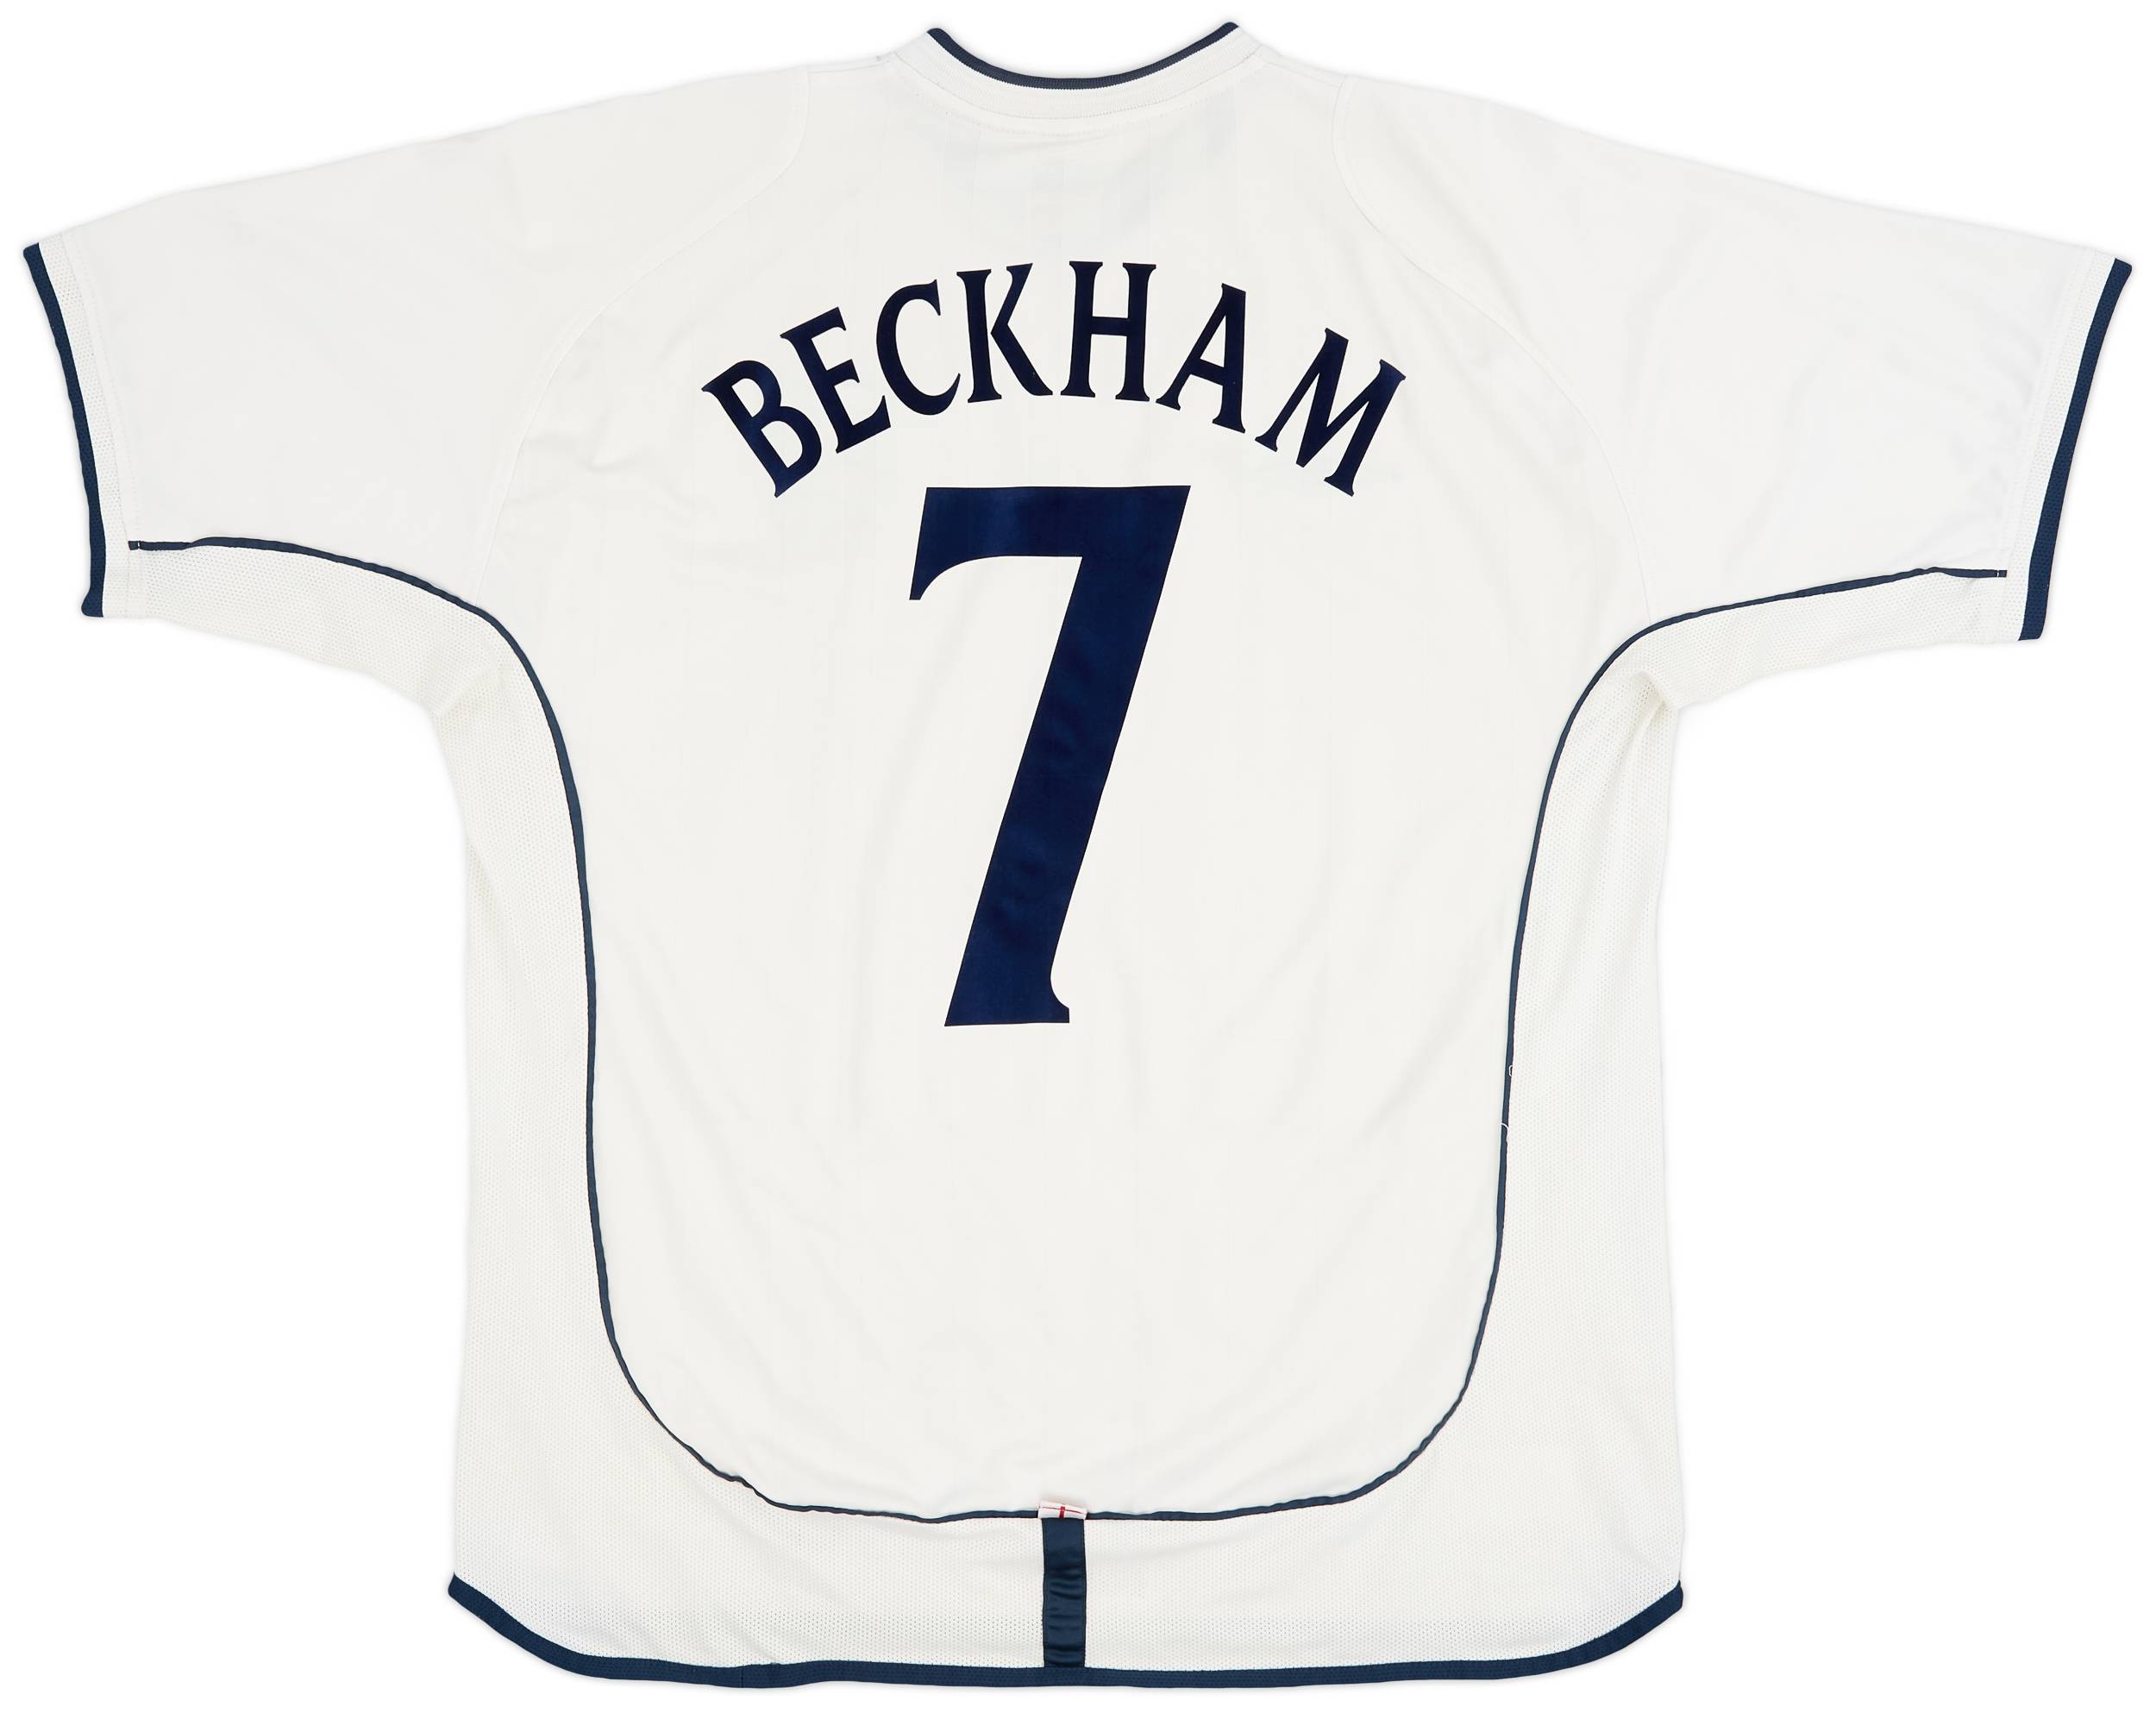 2001-03 England Home Shirt Beckham #7 - 6/10 - (XL)